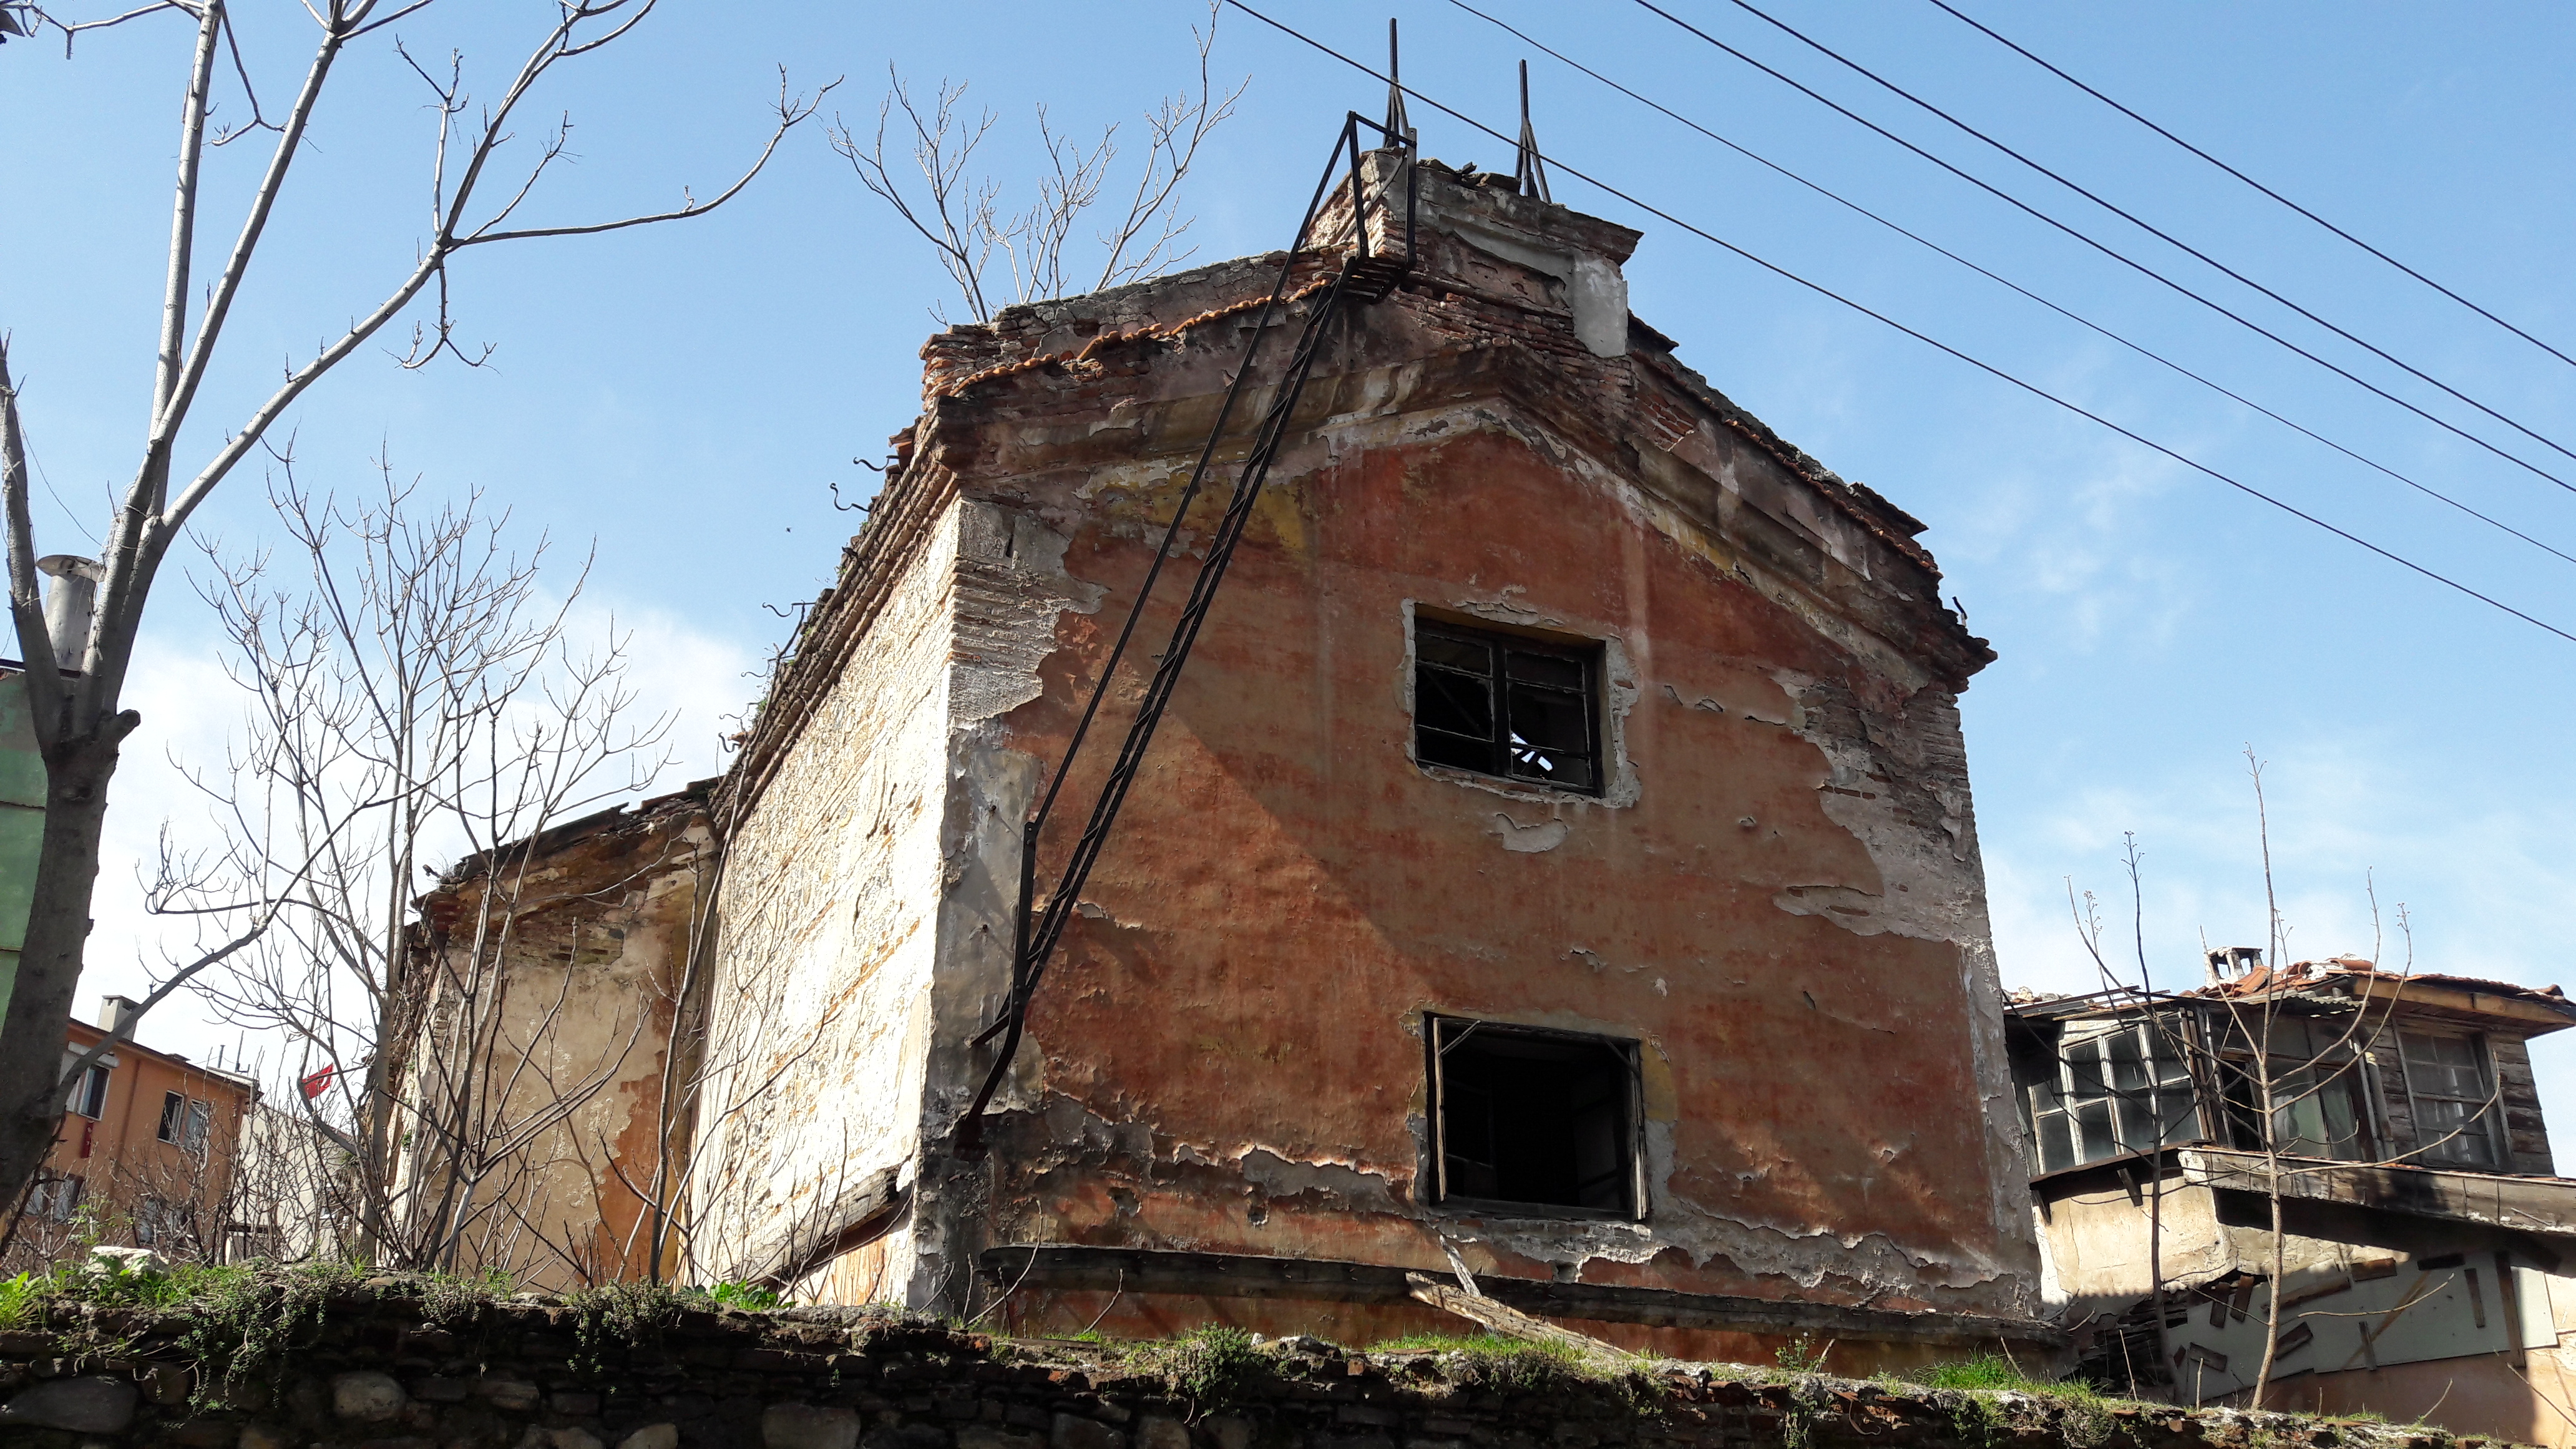 Ermeni Patrikhanesi:  Kiliselerin rant kaynağı  olarak görülmesi üzücü